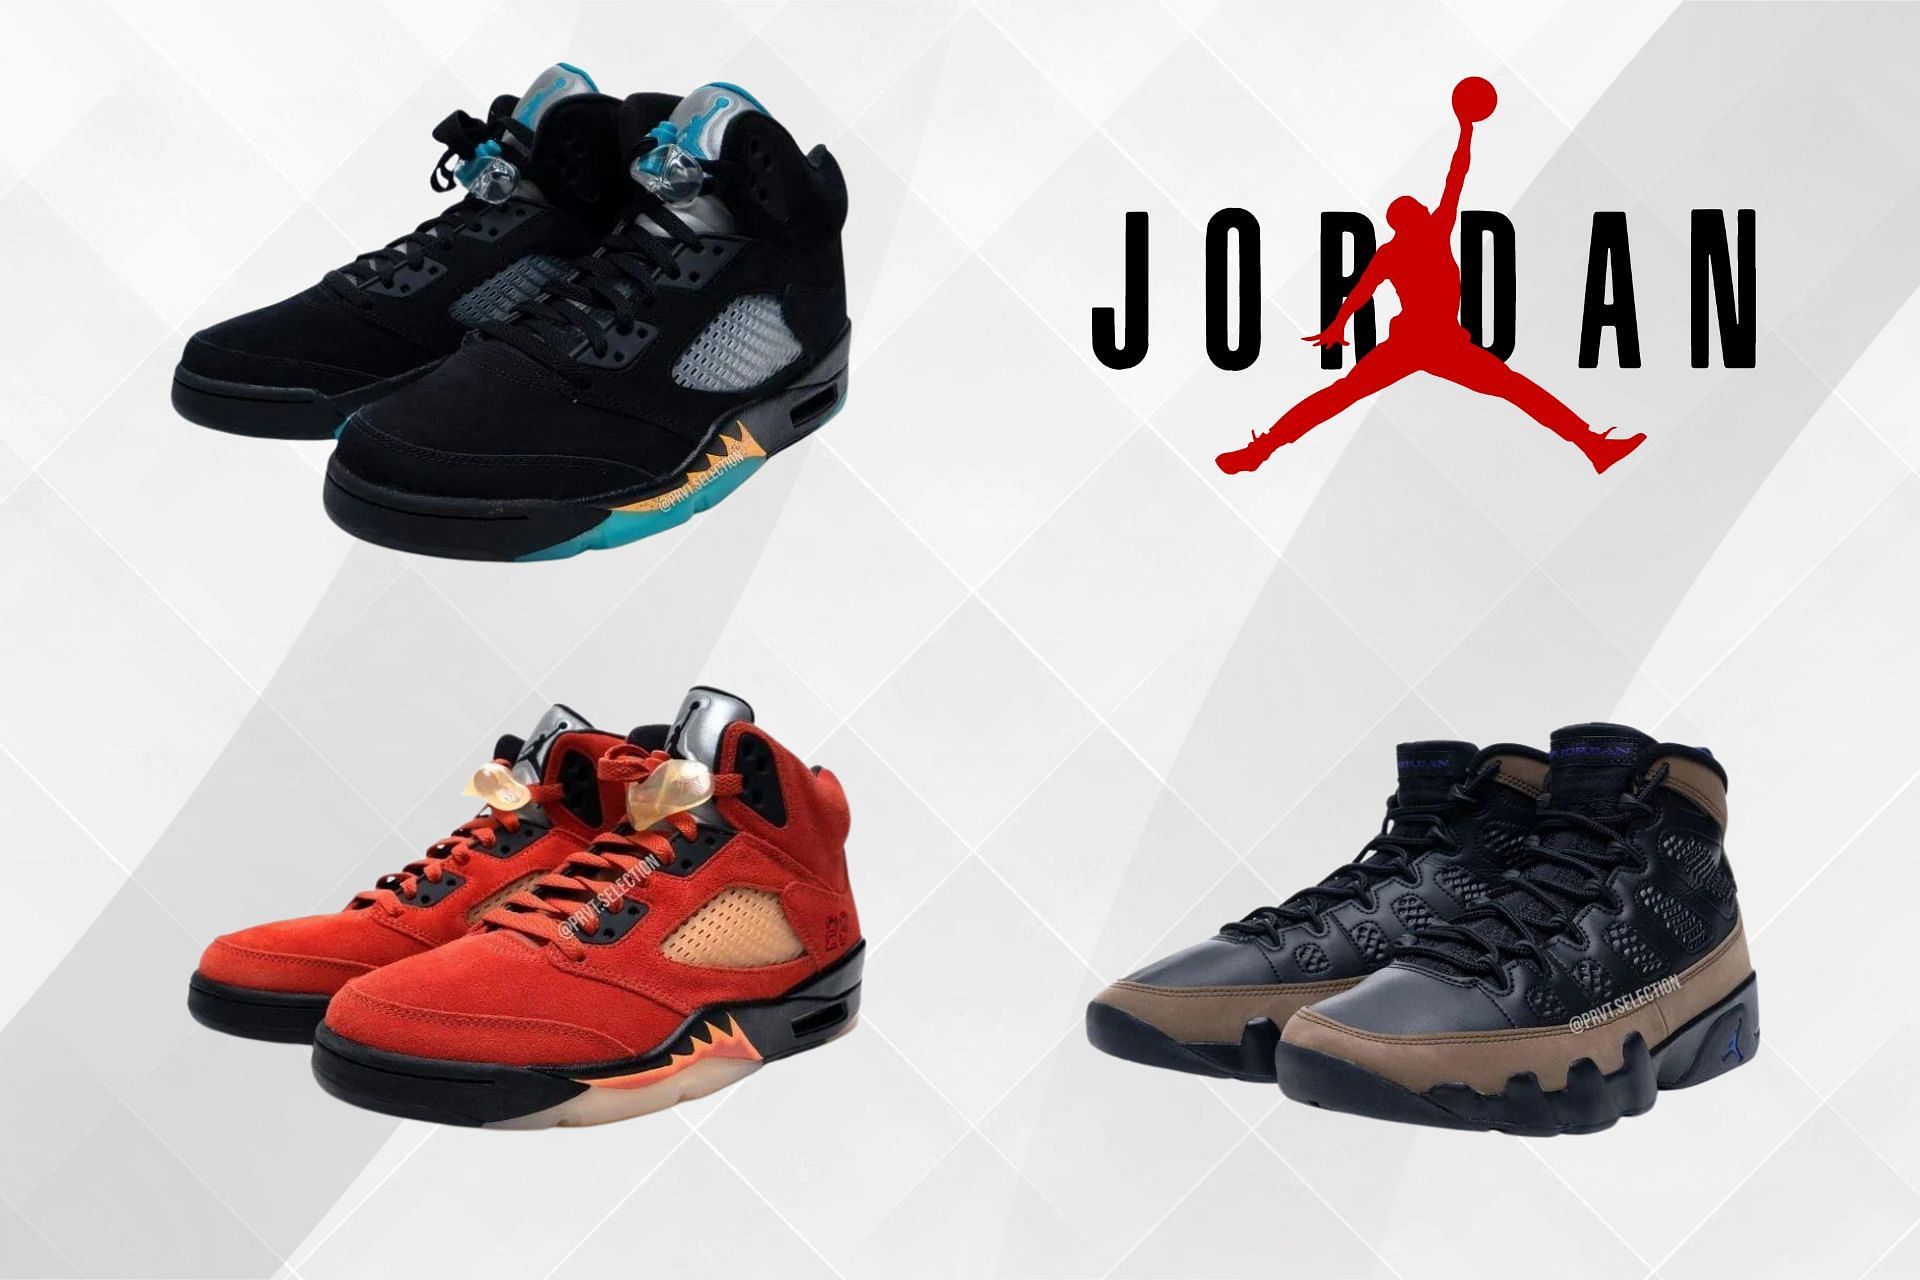 Air Jordans Releasing In January 2023